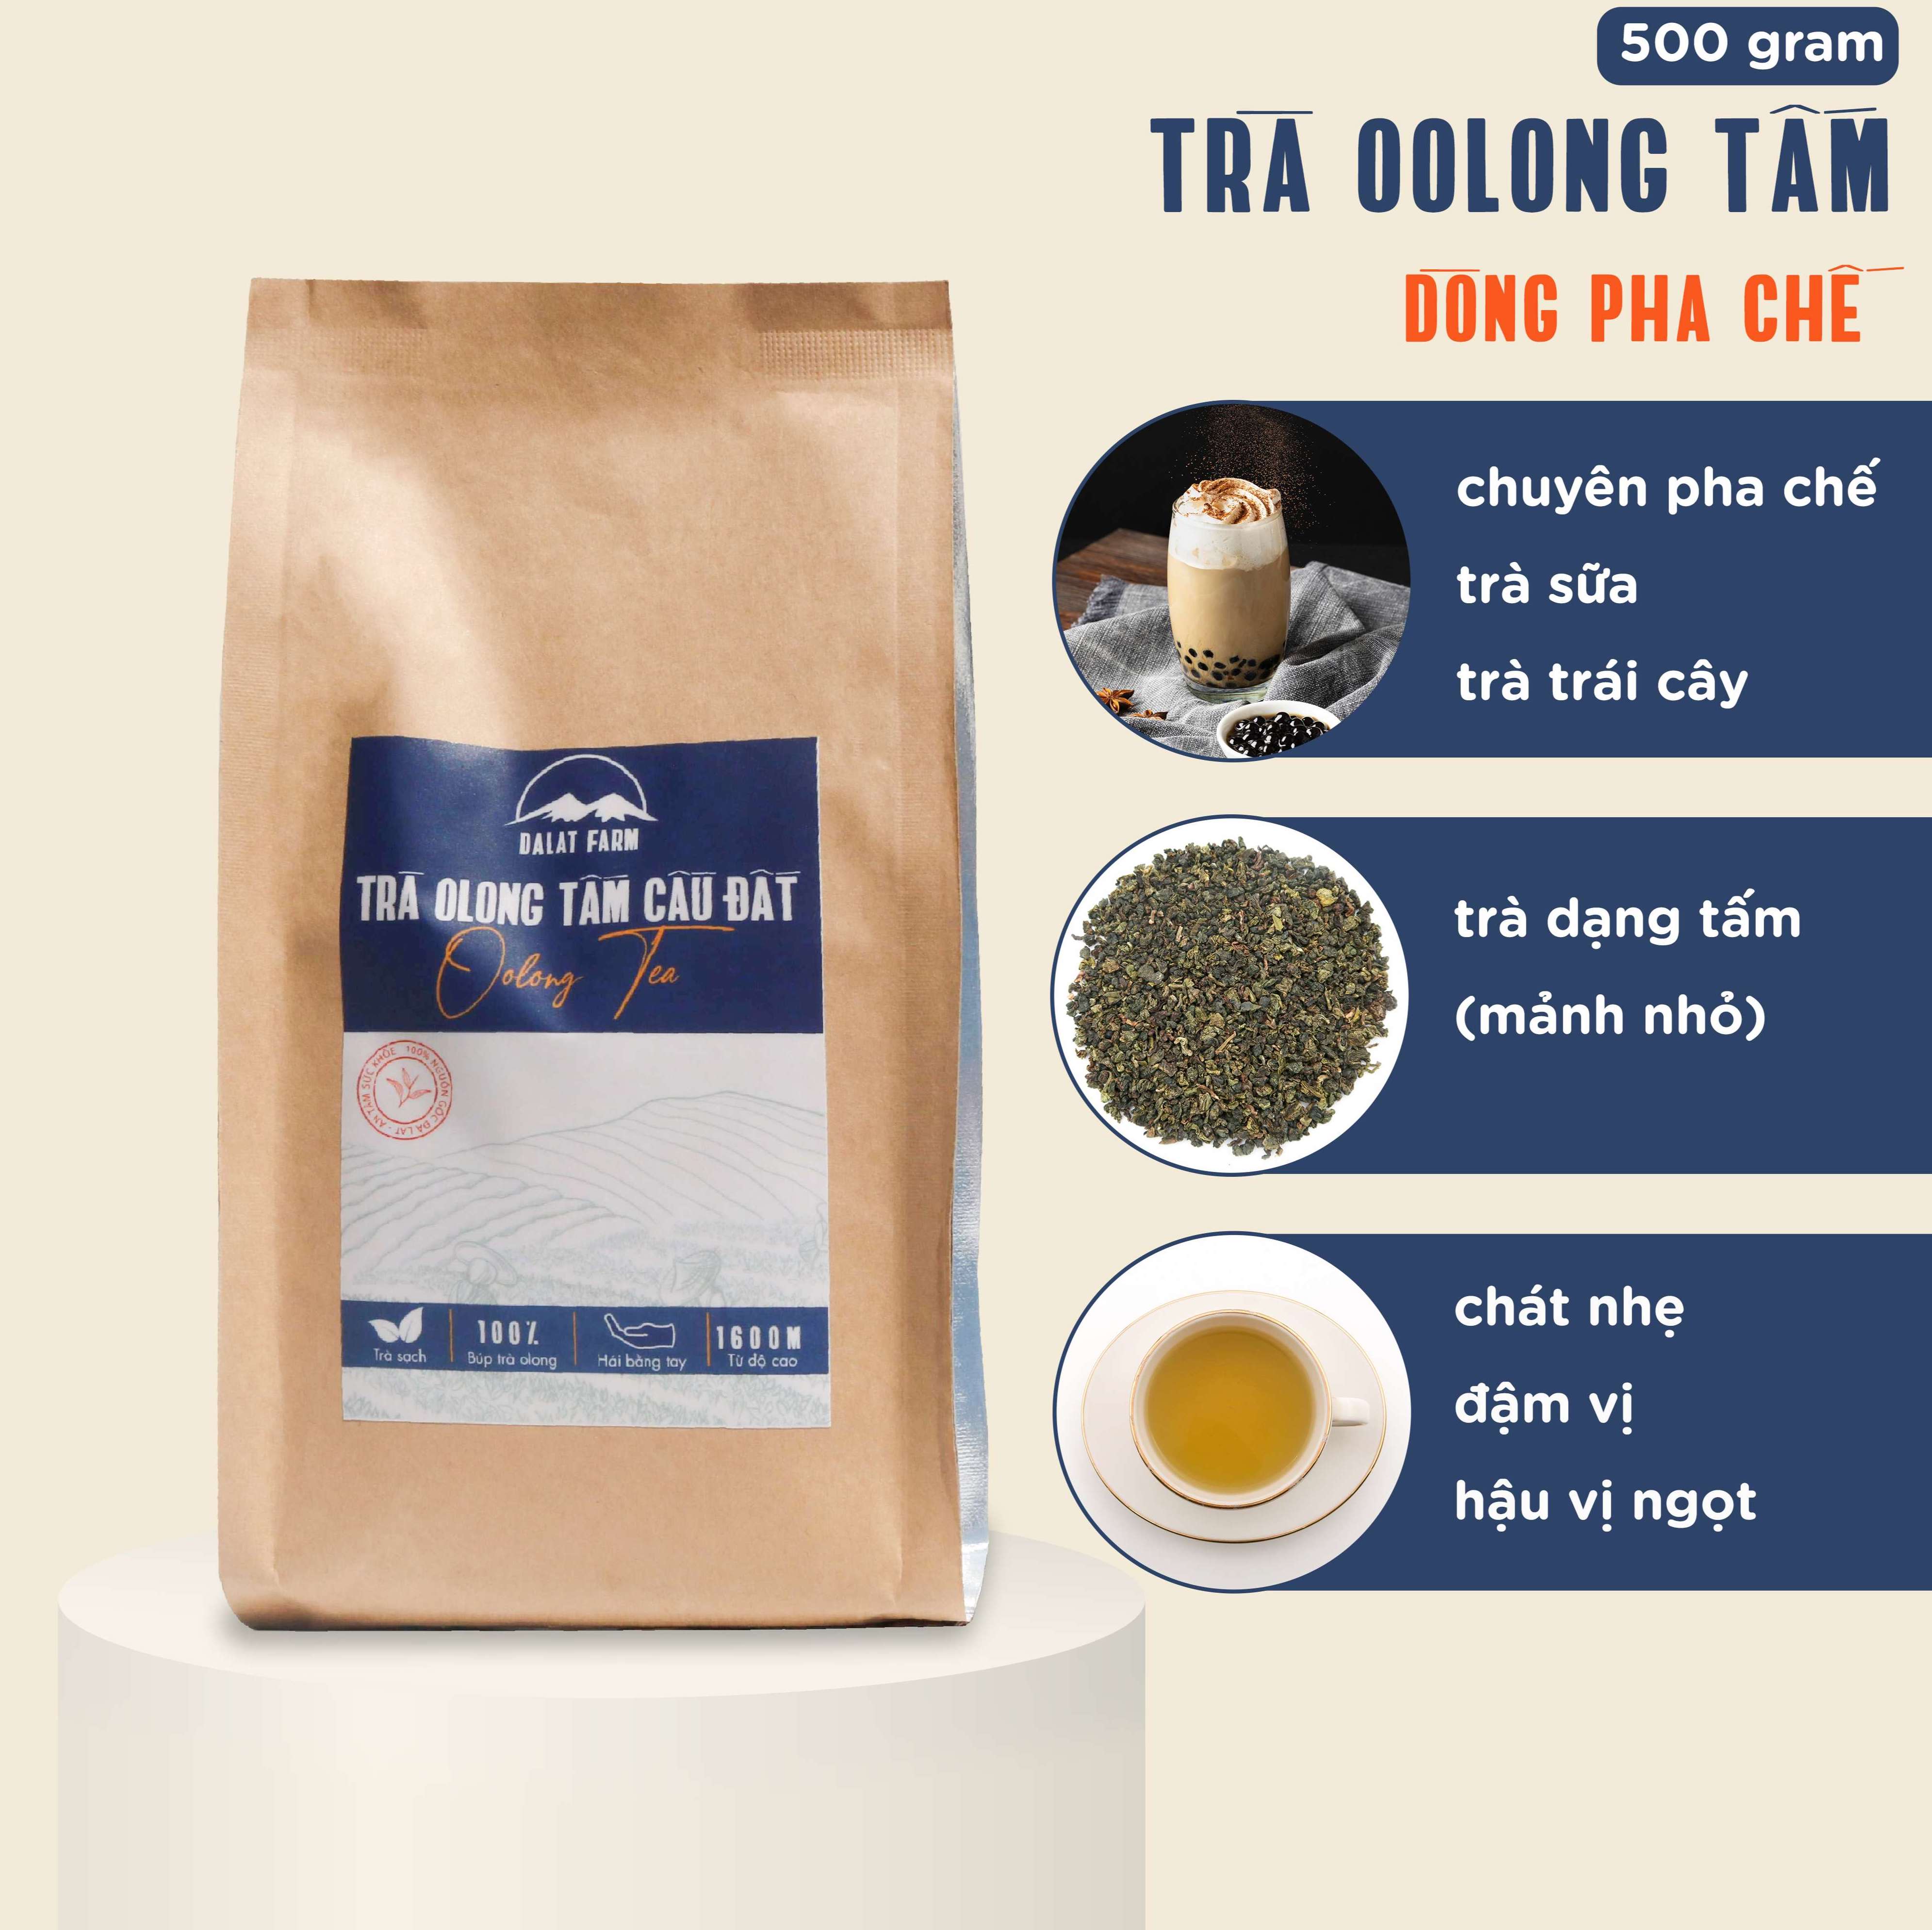 Trà Oolong tấm Cầu Đất nguyên liệu làm trà sữa tự pha trà sữa đài loan